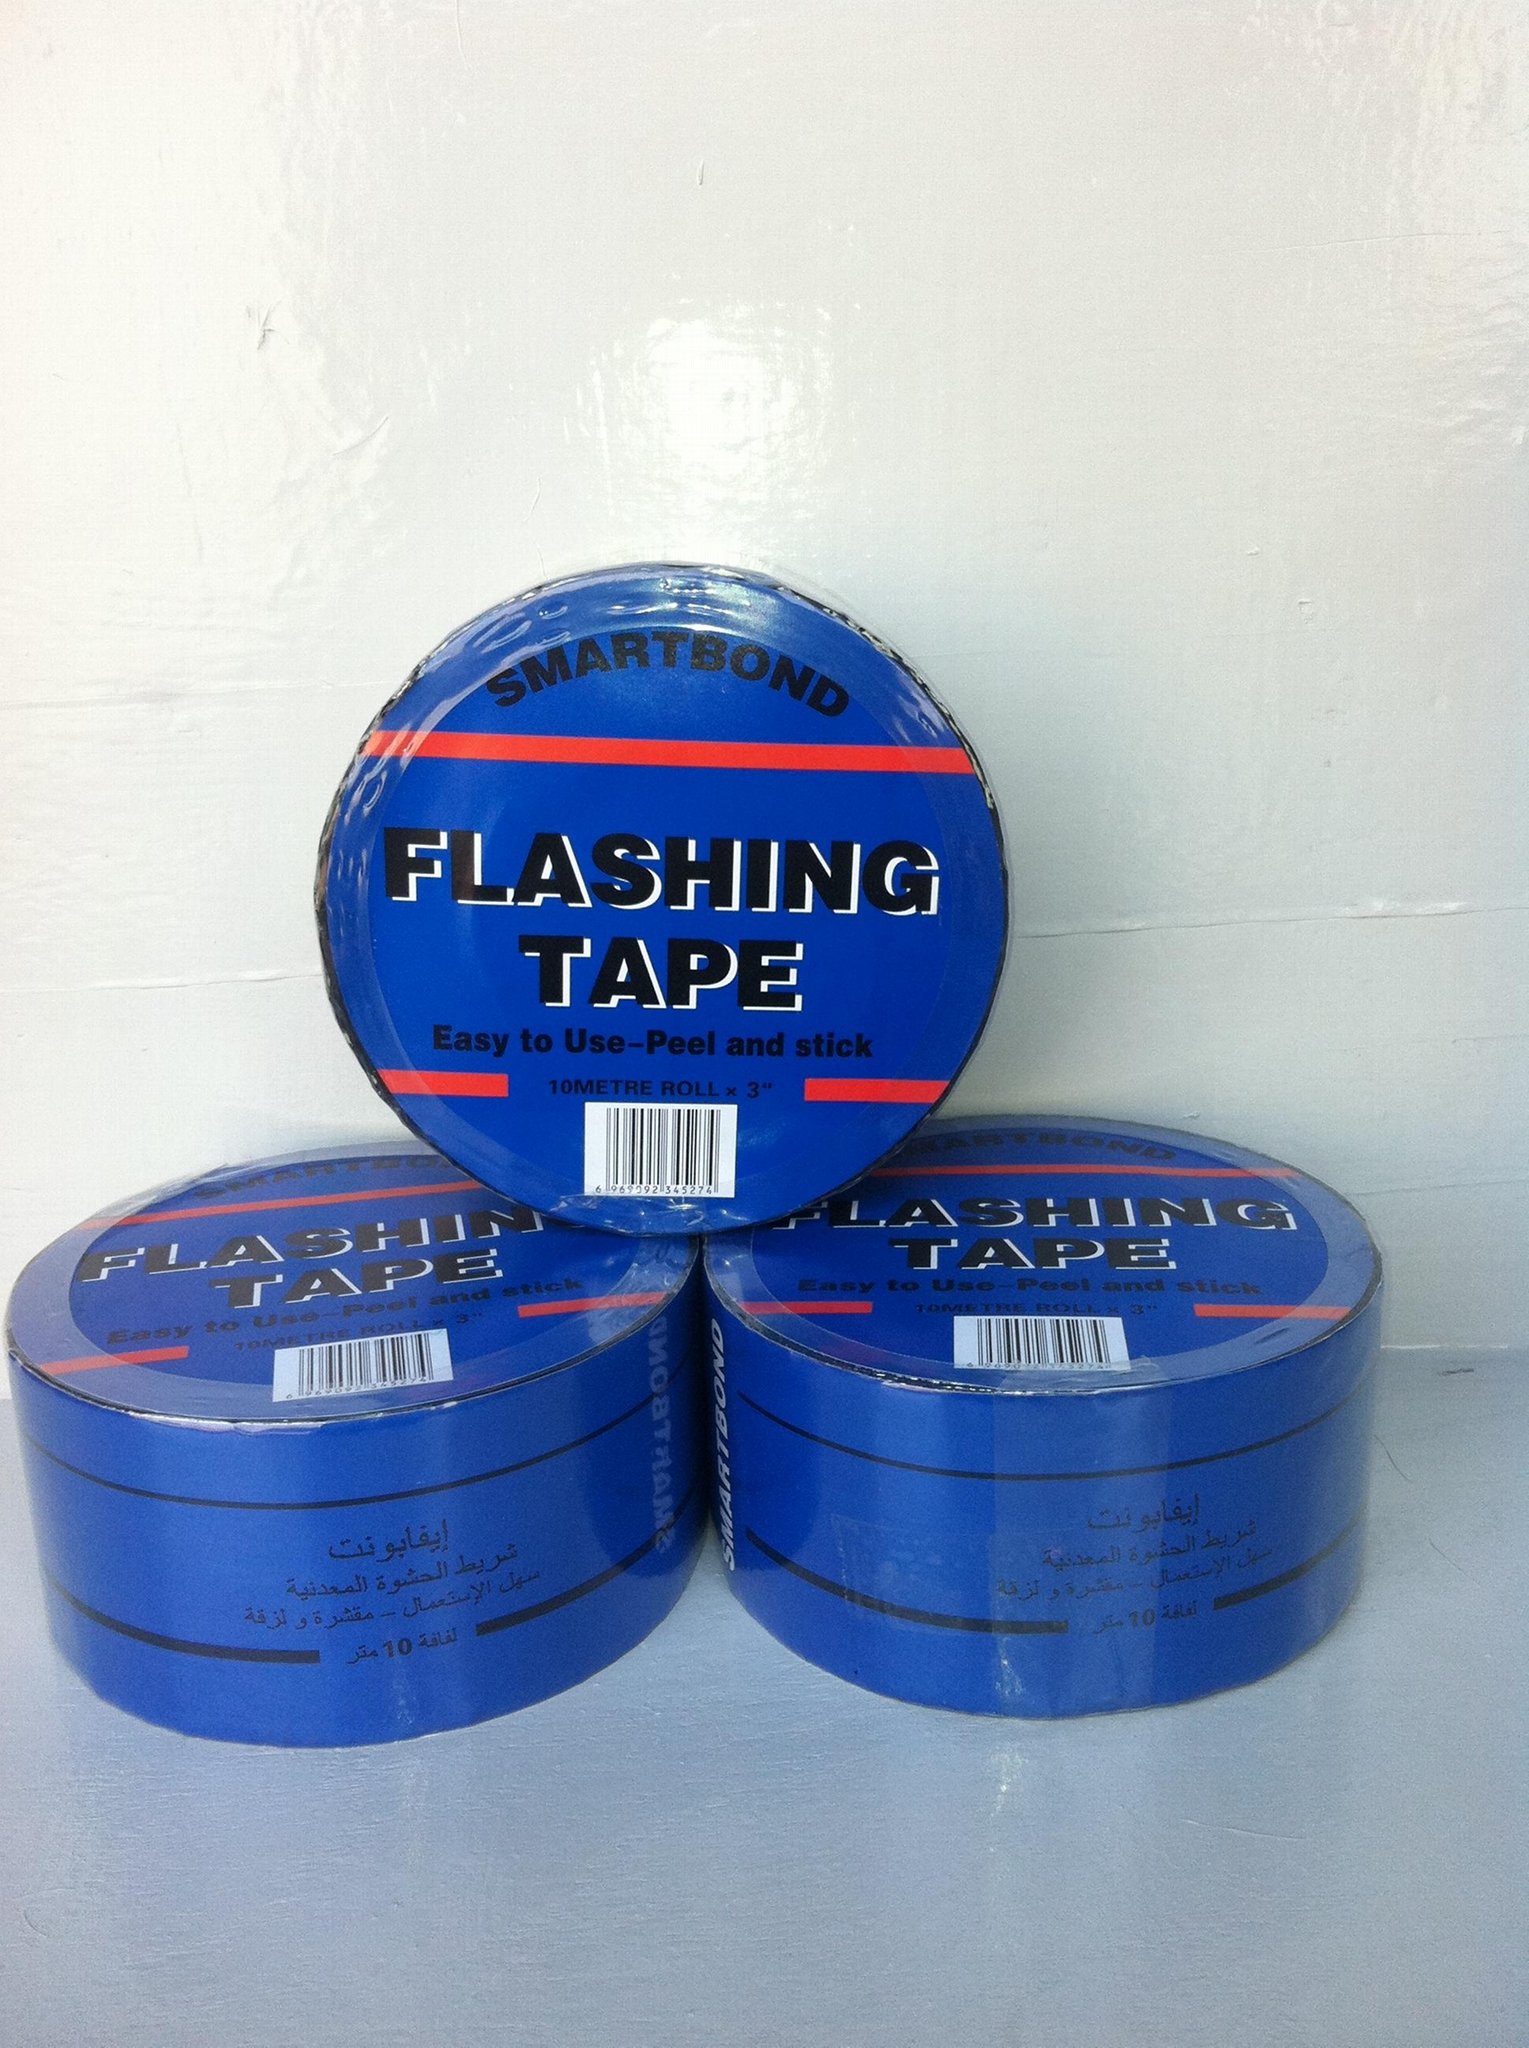 Self-adhesive flashing tape 3